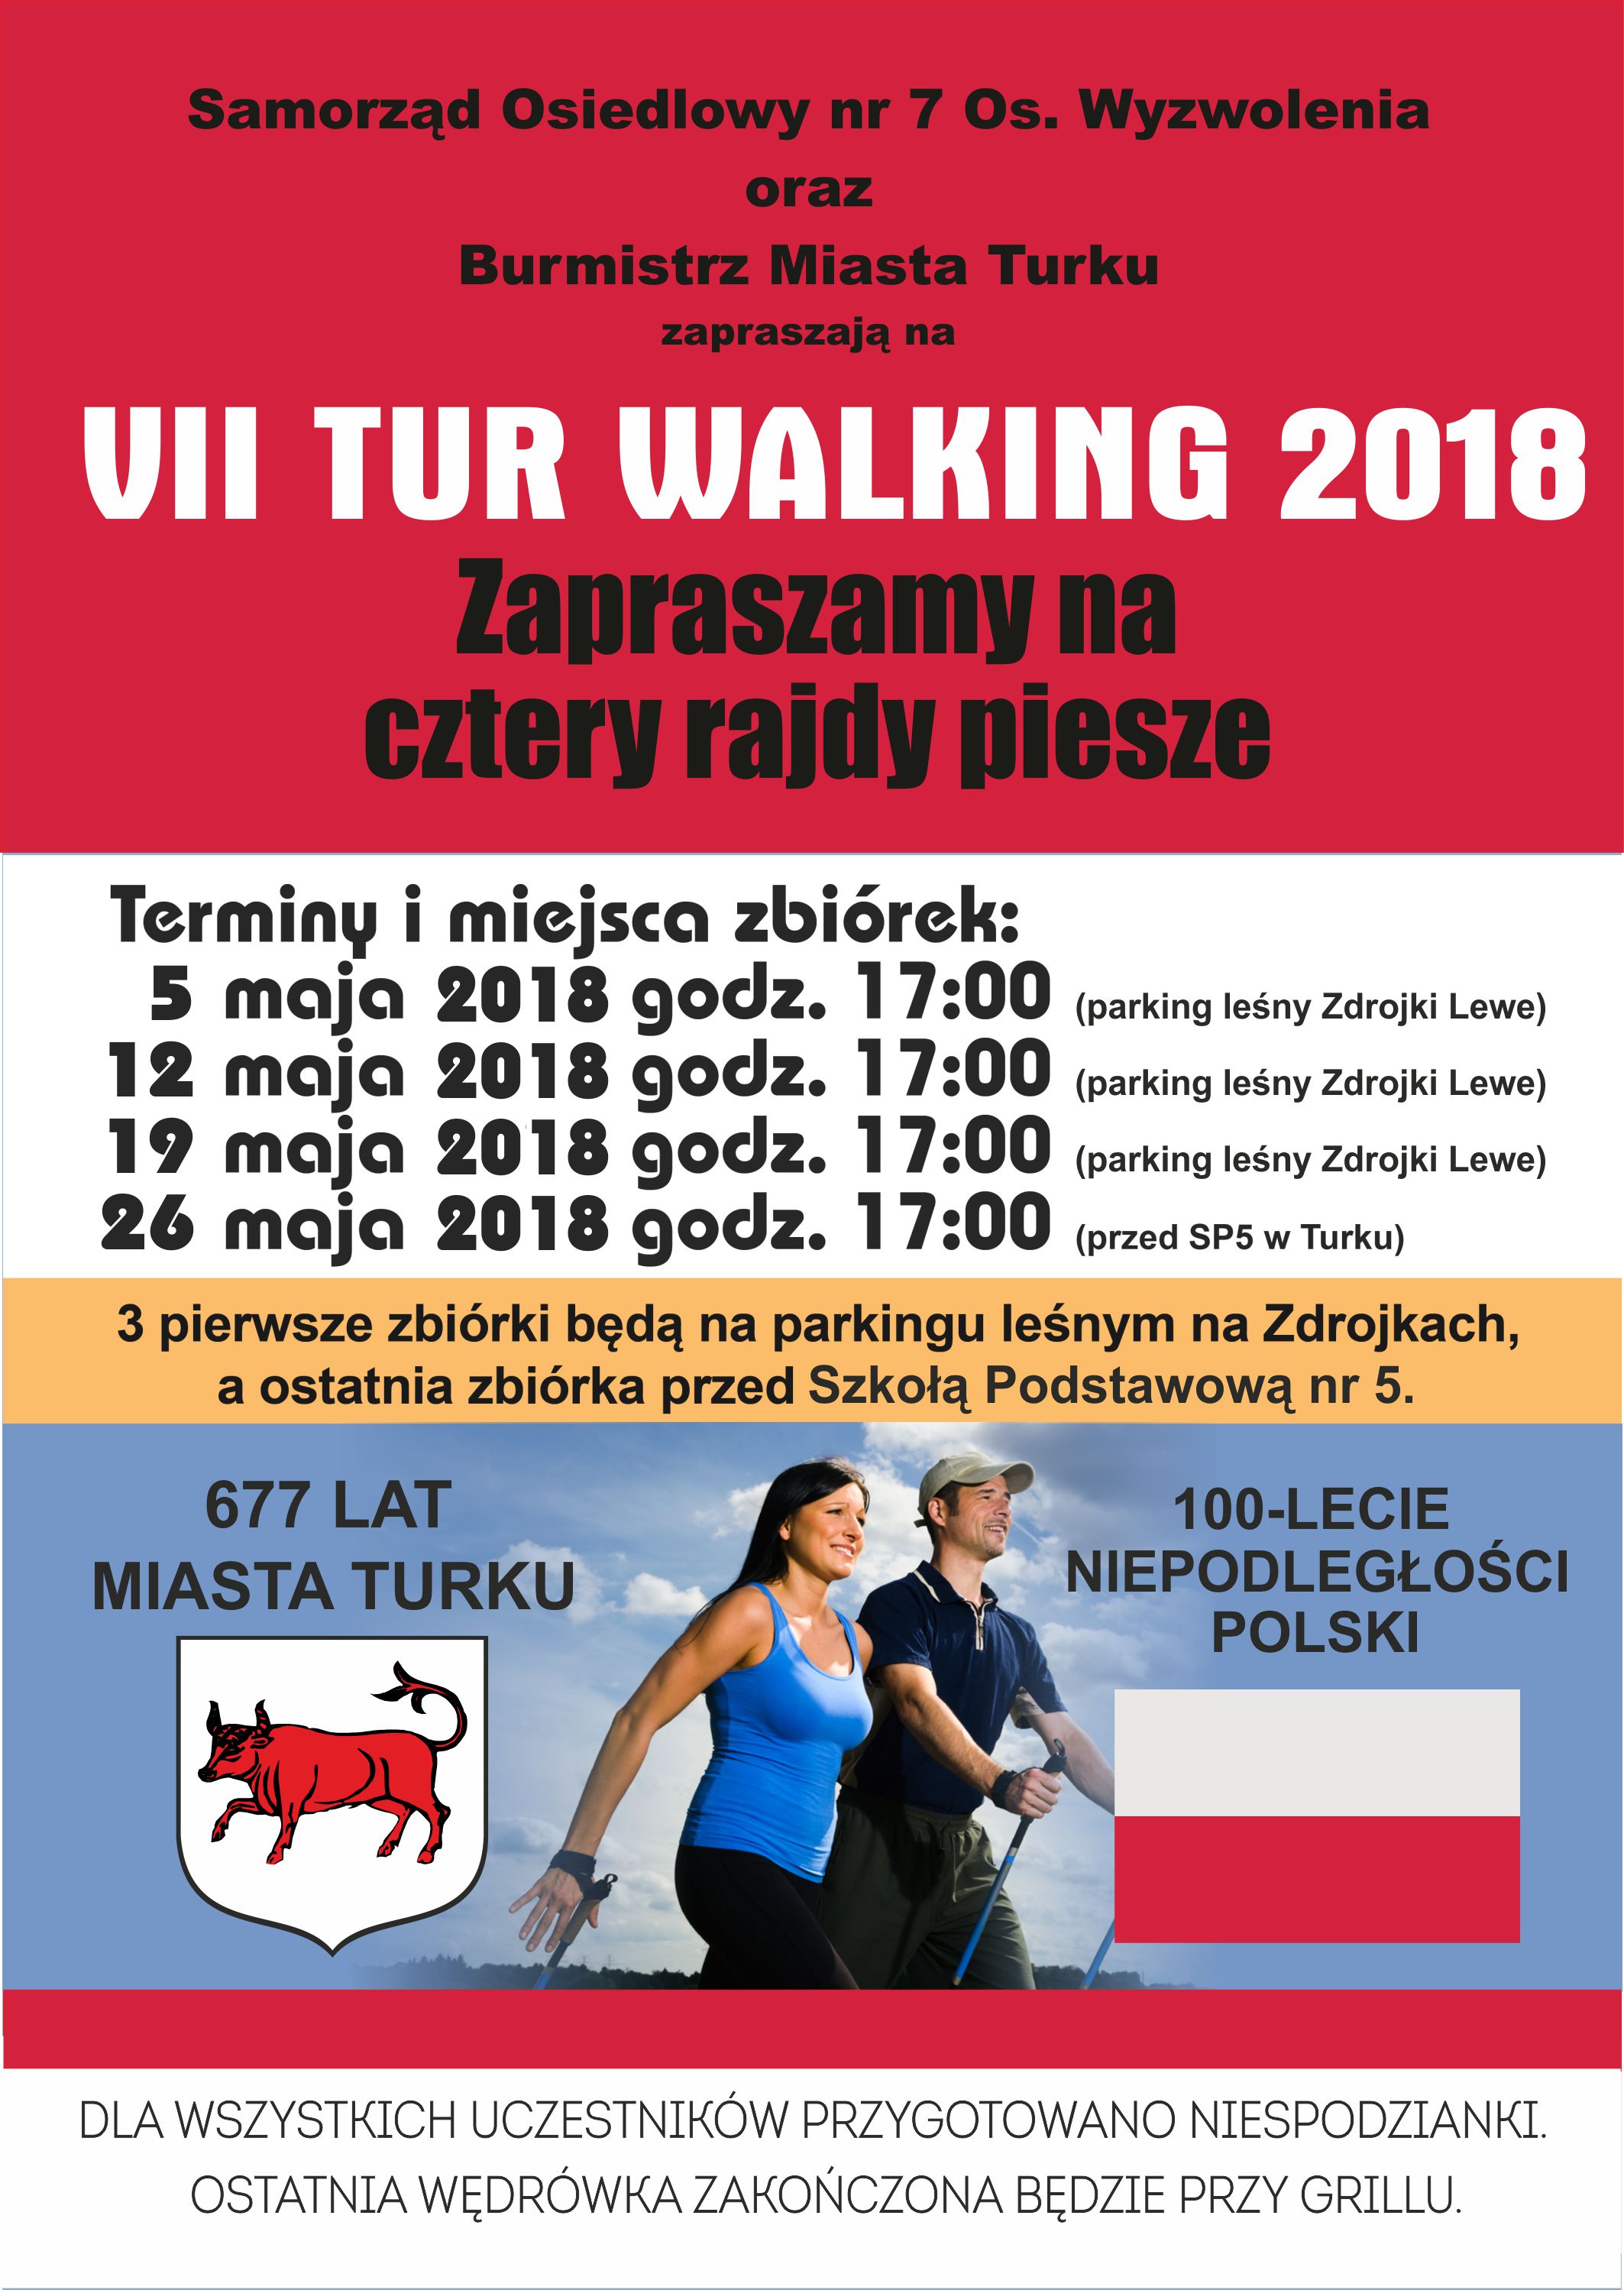 VII TUR WALKING 2018